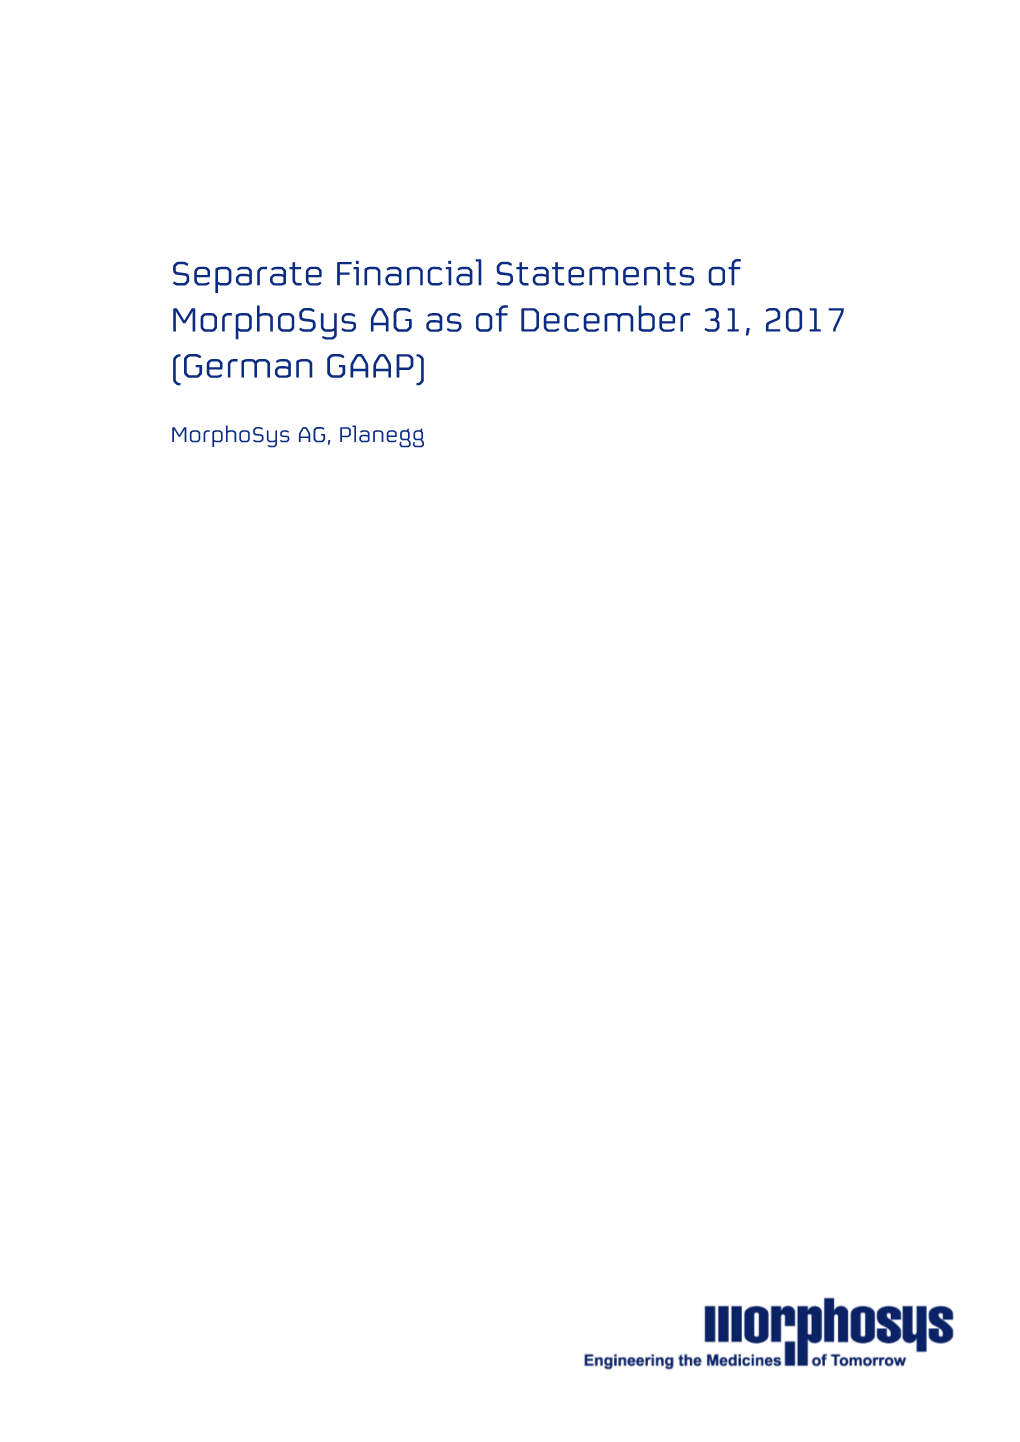 Separate Financial Statements of Morphosys AG As of December 31, 2017 (German GAAP)